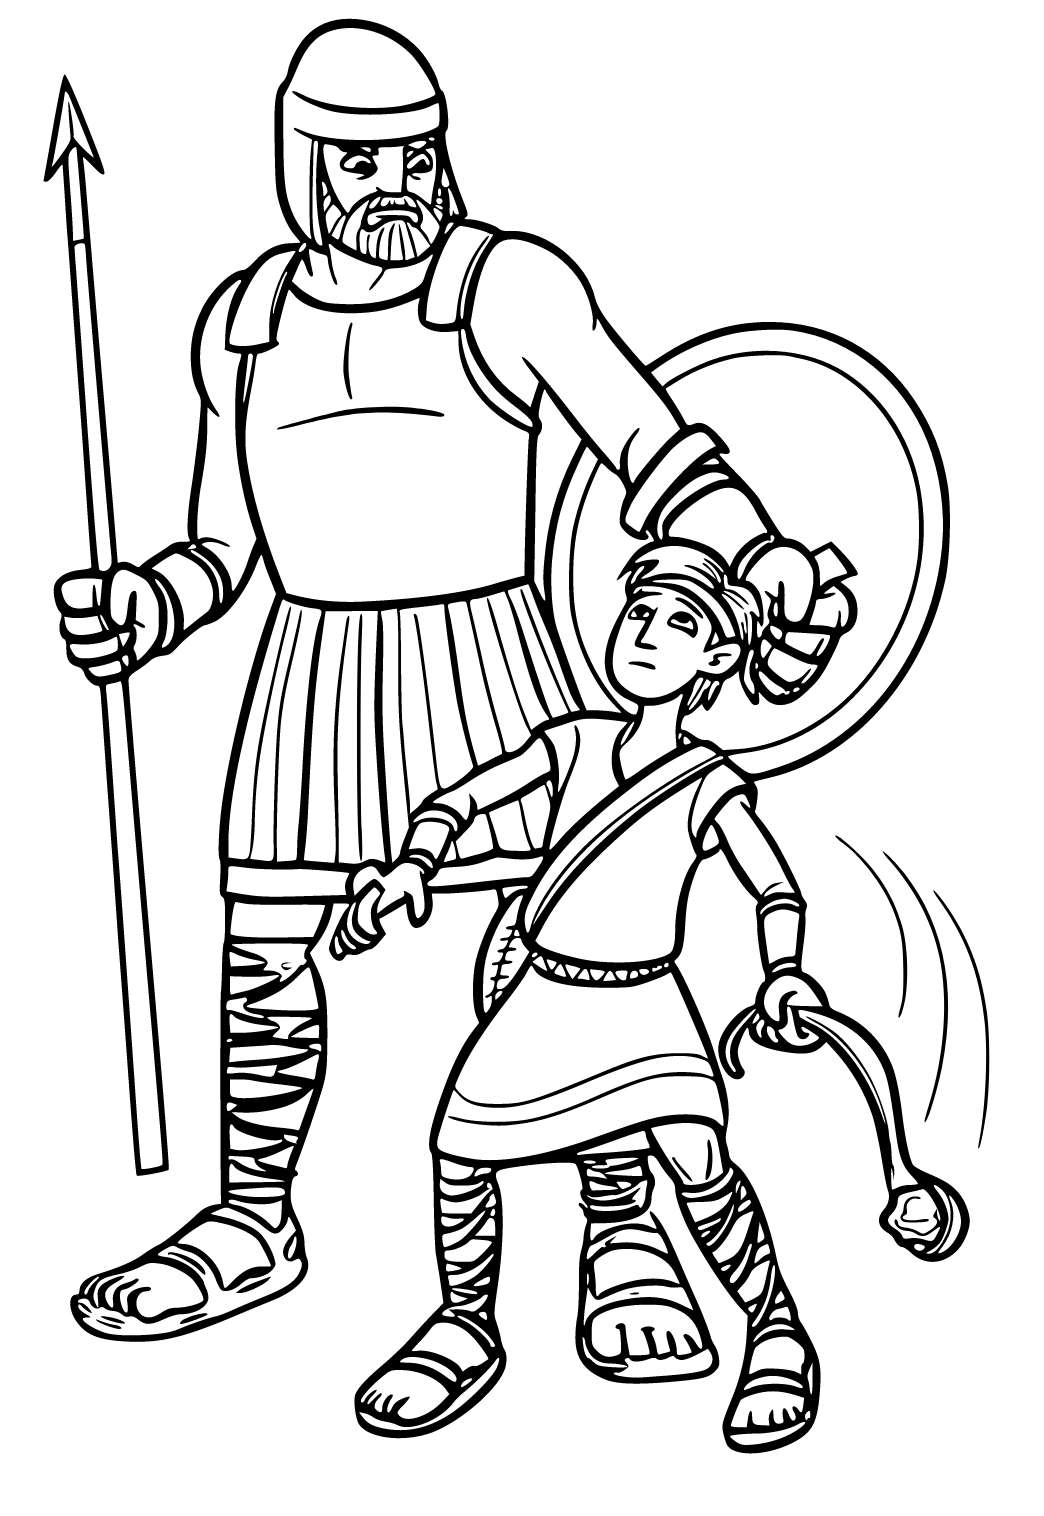 David ve Goliath